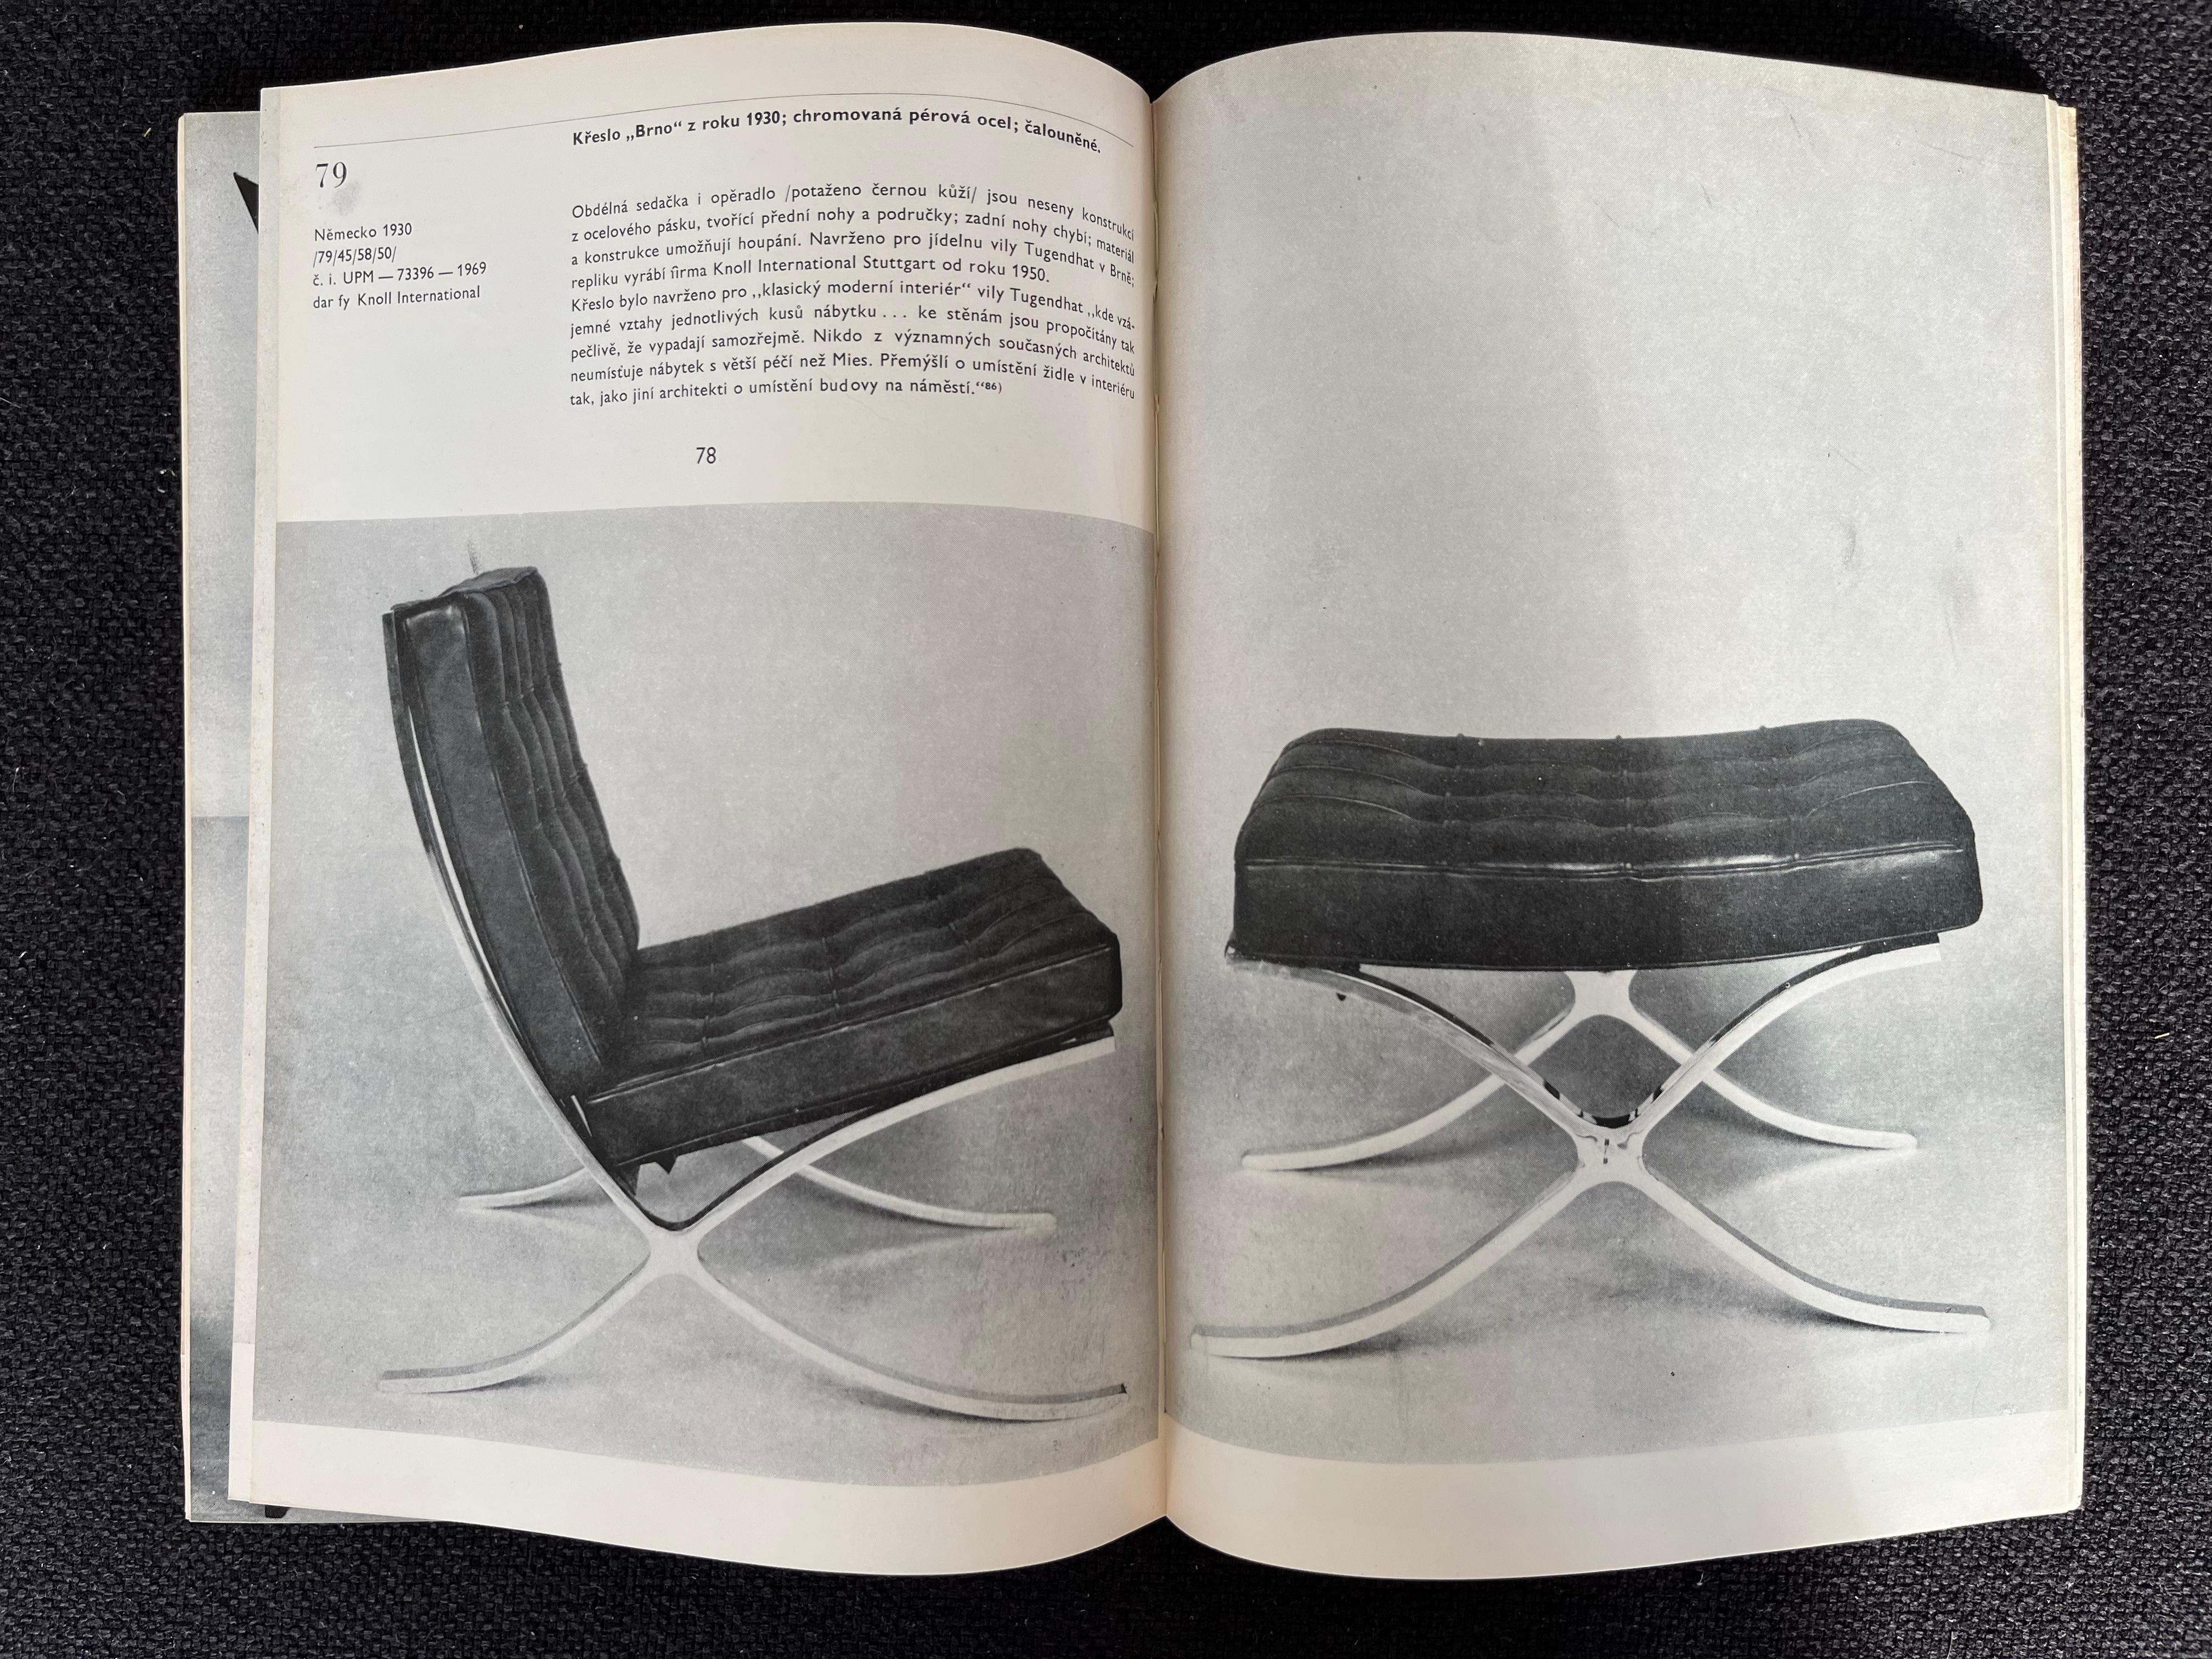 - 1972, Musée des arts décoratifs de Prague.
- 2000 exemplaires
- langue tchèque
- état original, voir les photos
- pages non numérotées
- de nombreuses photos de chaises de Mies van der Rohe, Eoro Saarinen,
 Adolf Loos, Arne Jacobsen...
- JR.